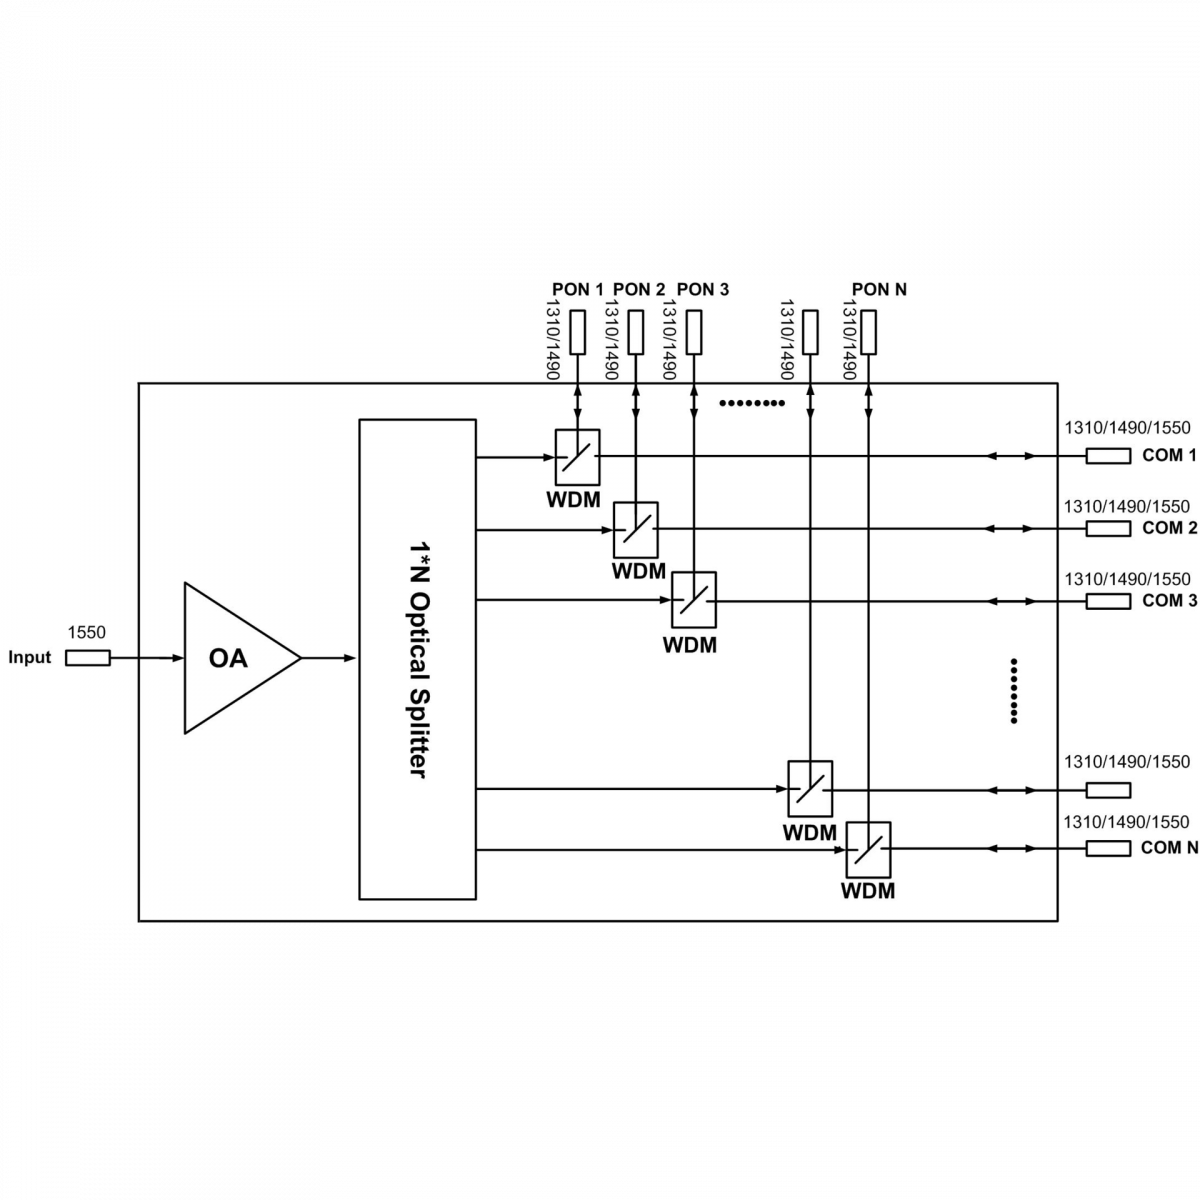 Оптический усилитель VERMAX для сетей КТВ, 8*21dBm, WDM фильтр PON